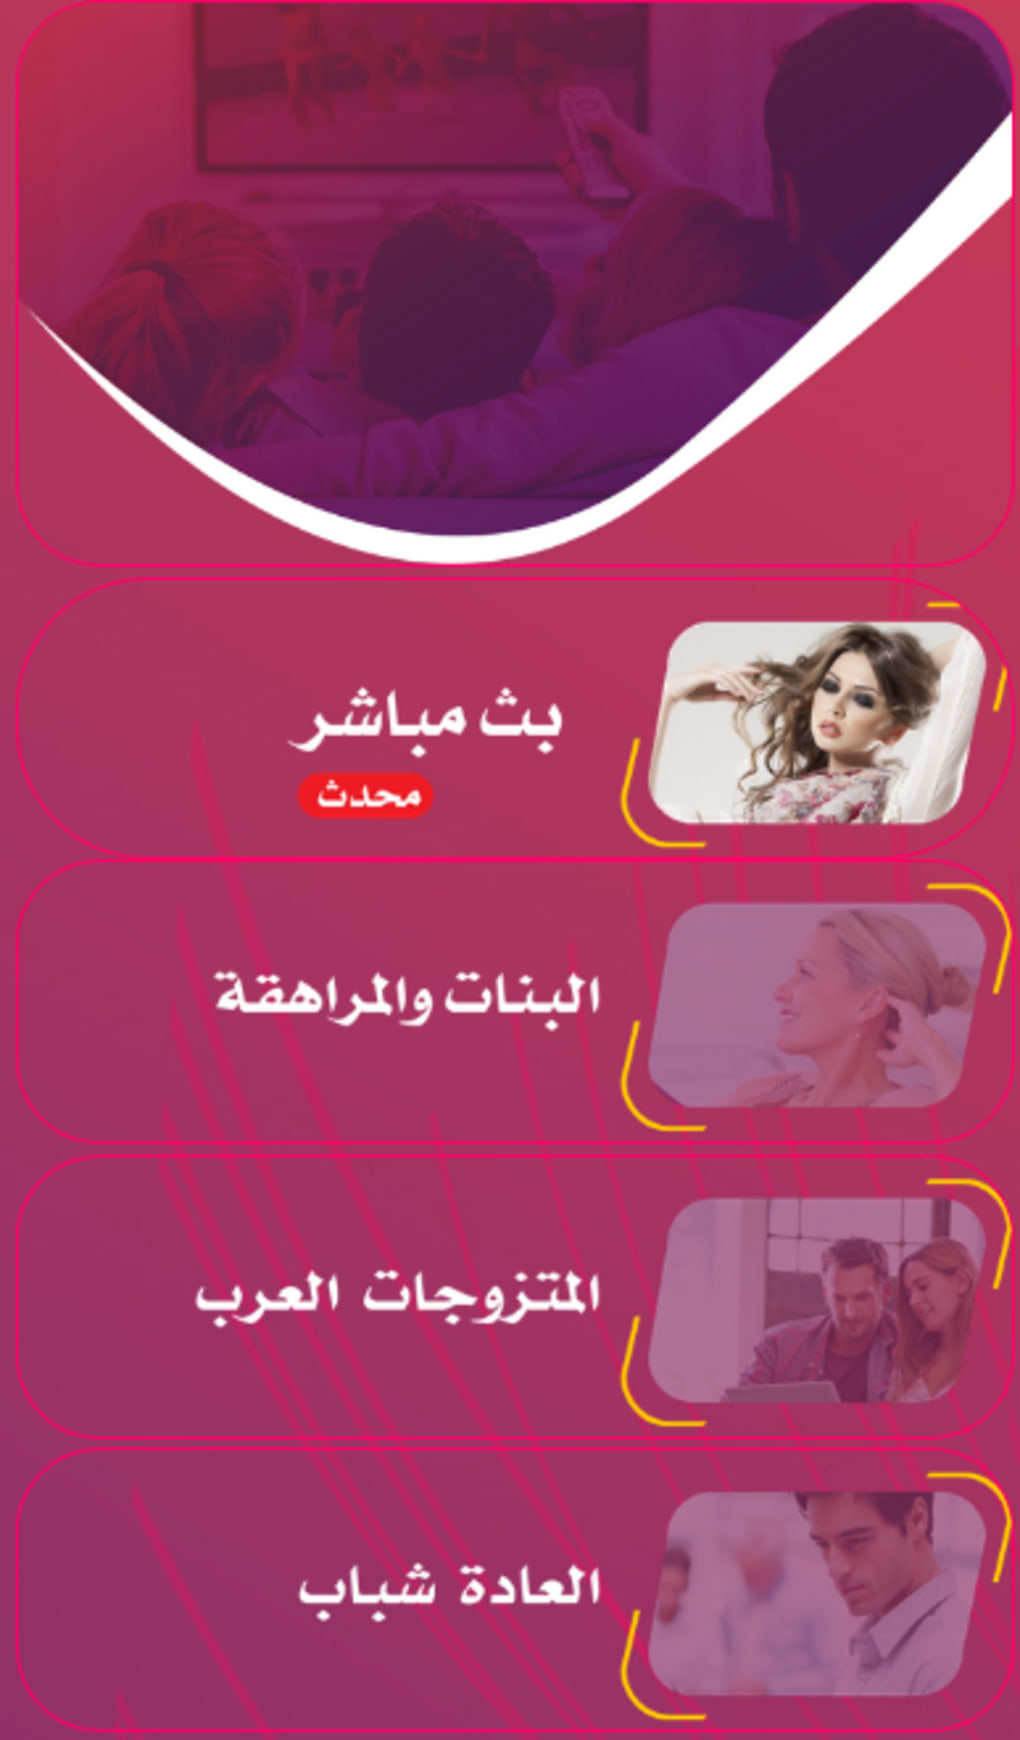 سكس عربي تعليم APK لنظام Android - تنزيل